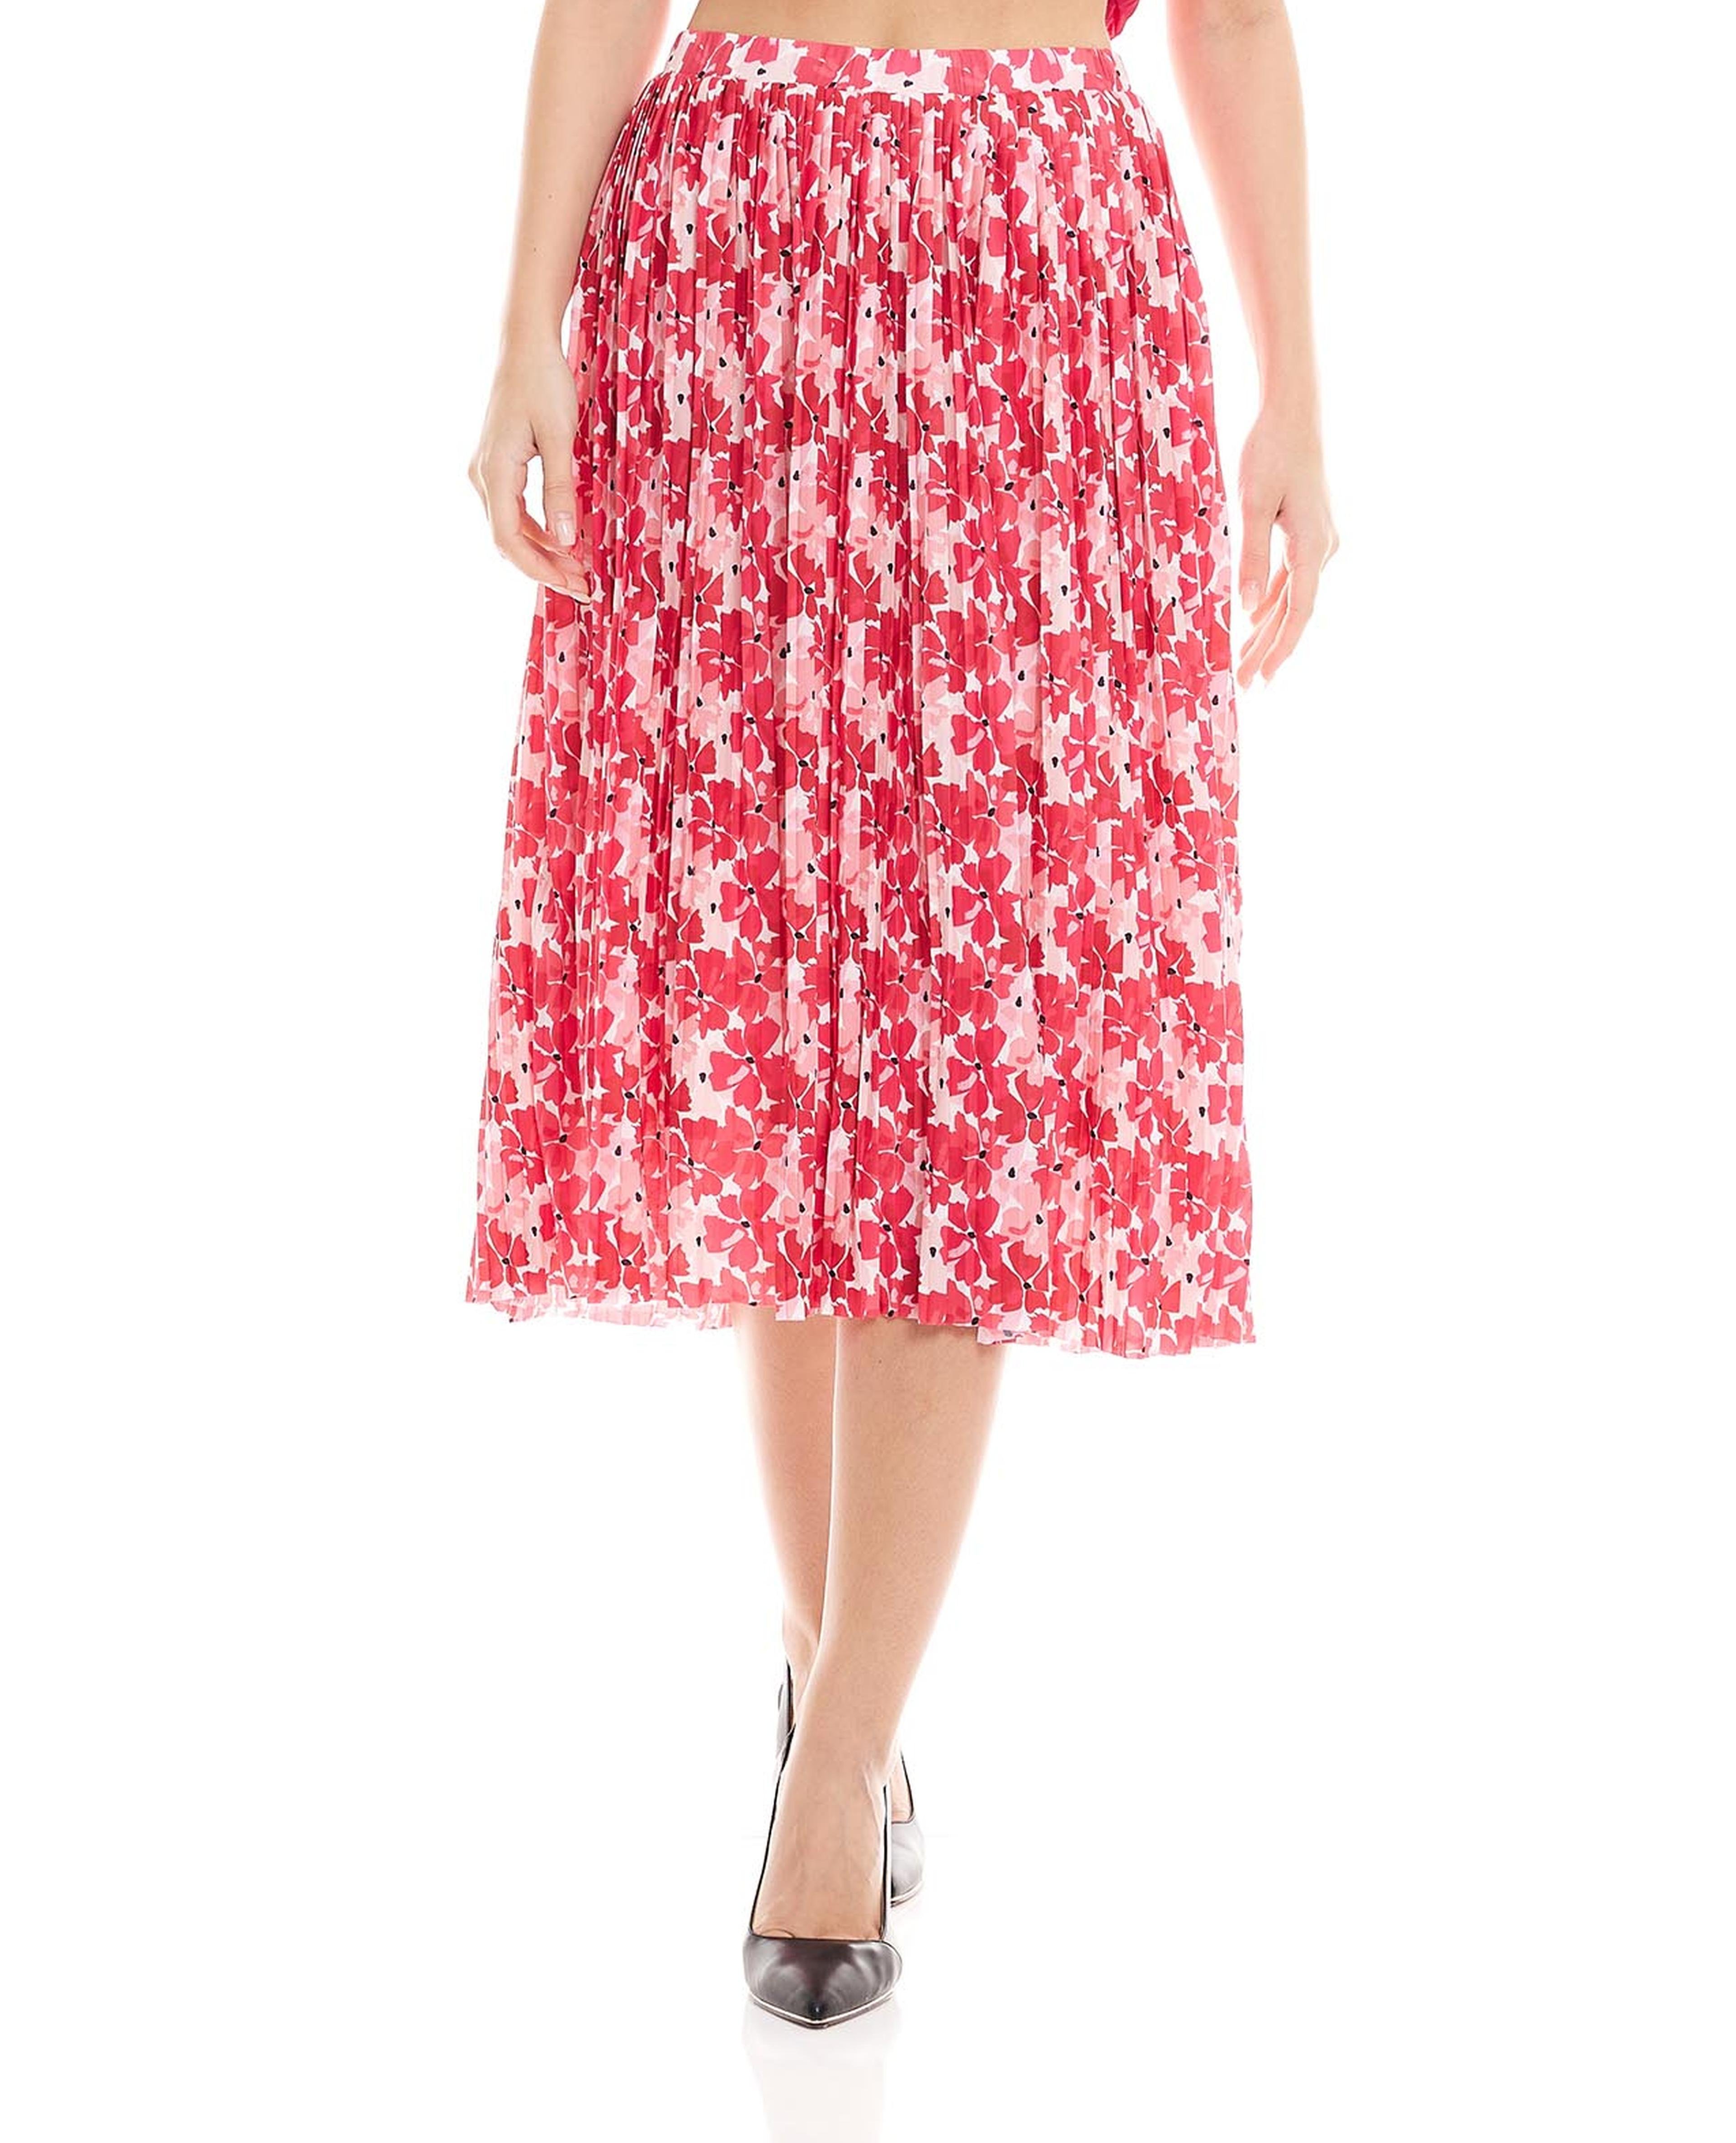 Printed Elastic Waist Midi Skirt